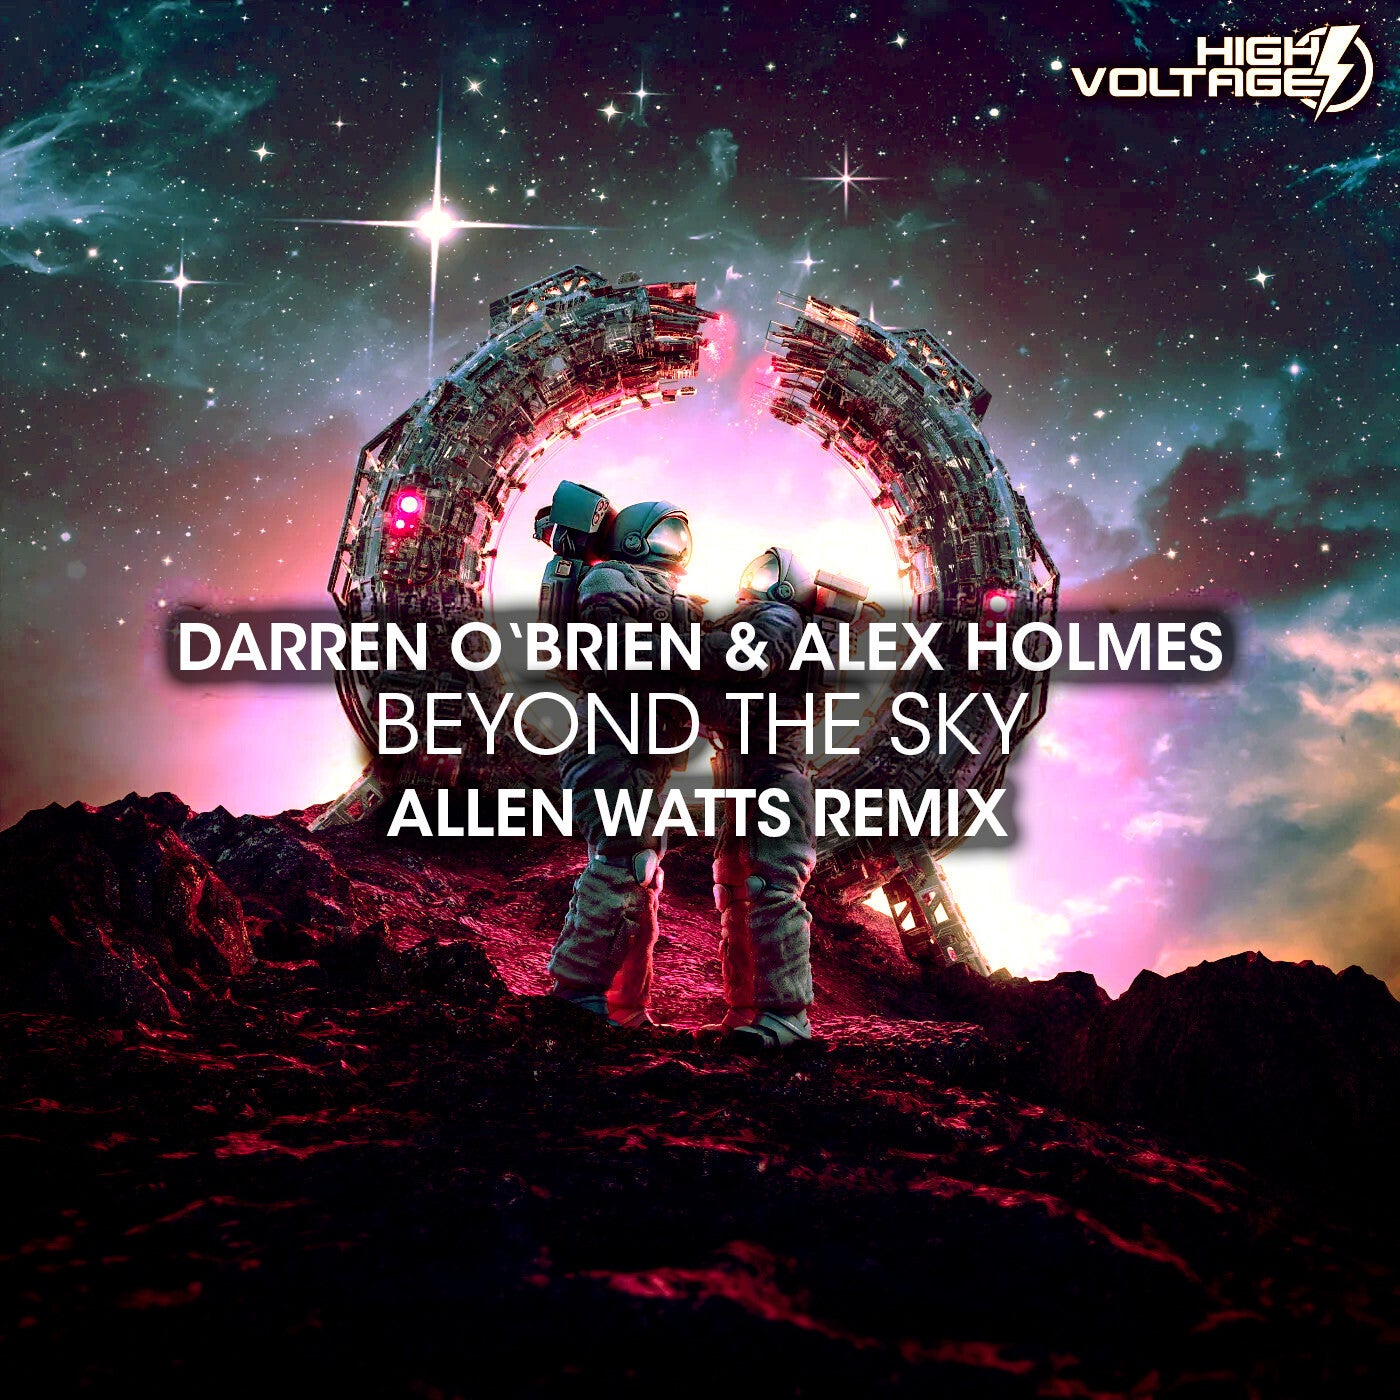 Vielleicht vielleicht jason watts remix. Beyond the Sky (Allen Watts Remix) Darren o'Brien & Alex holmes. Alex holmes. Allen Watts Limitless Extended. Allen Watts Santa.